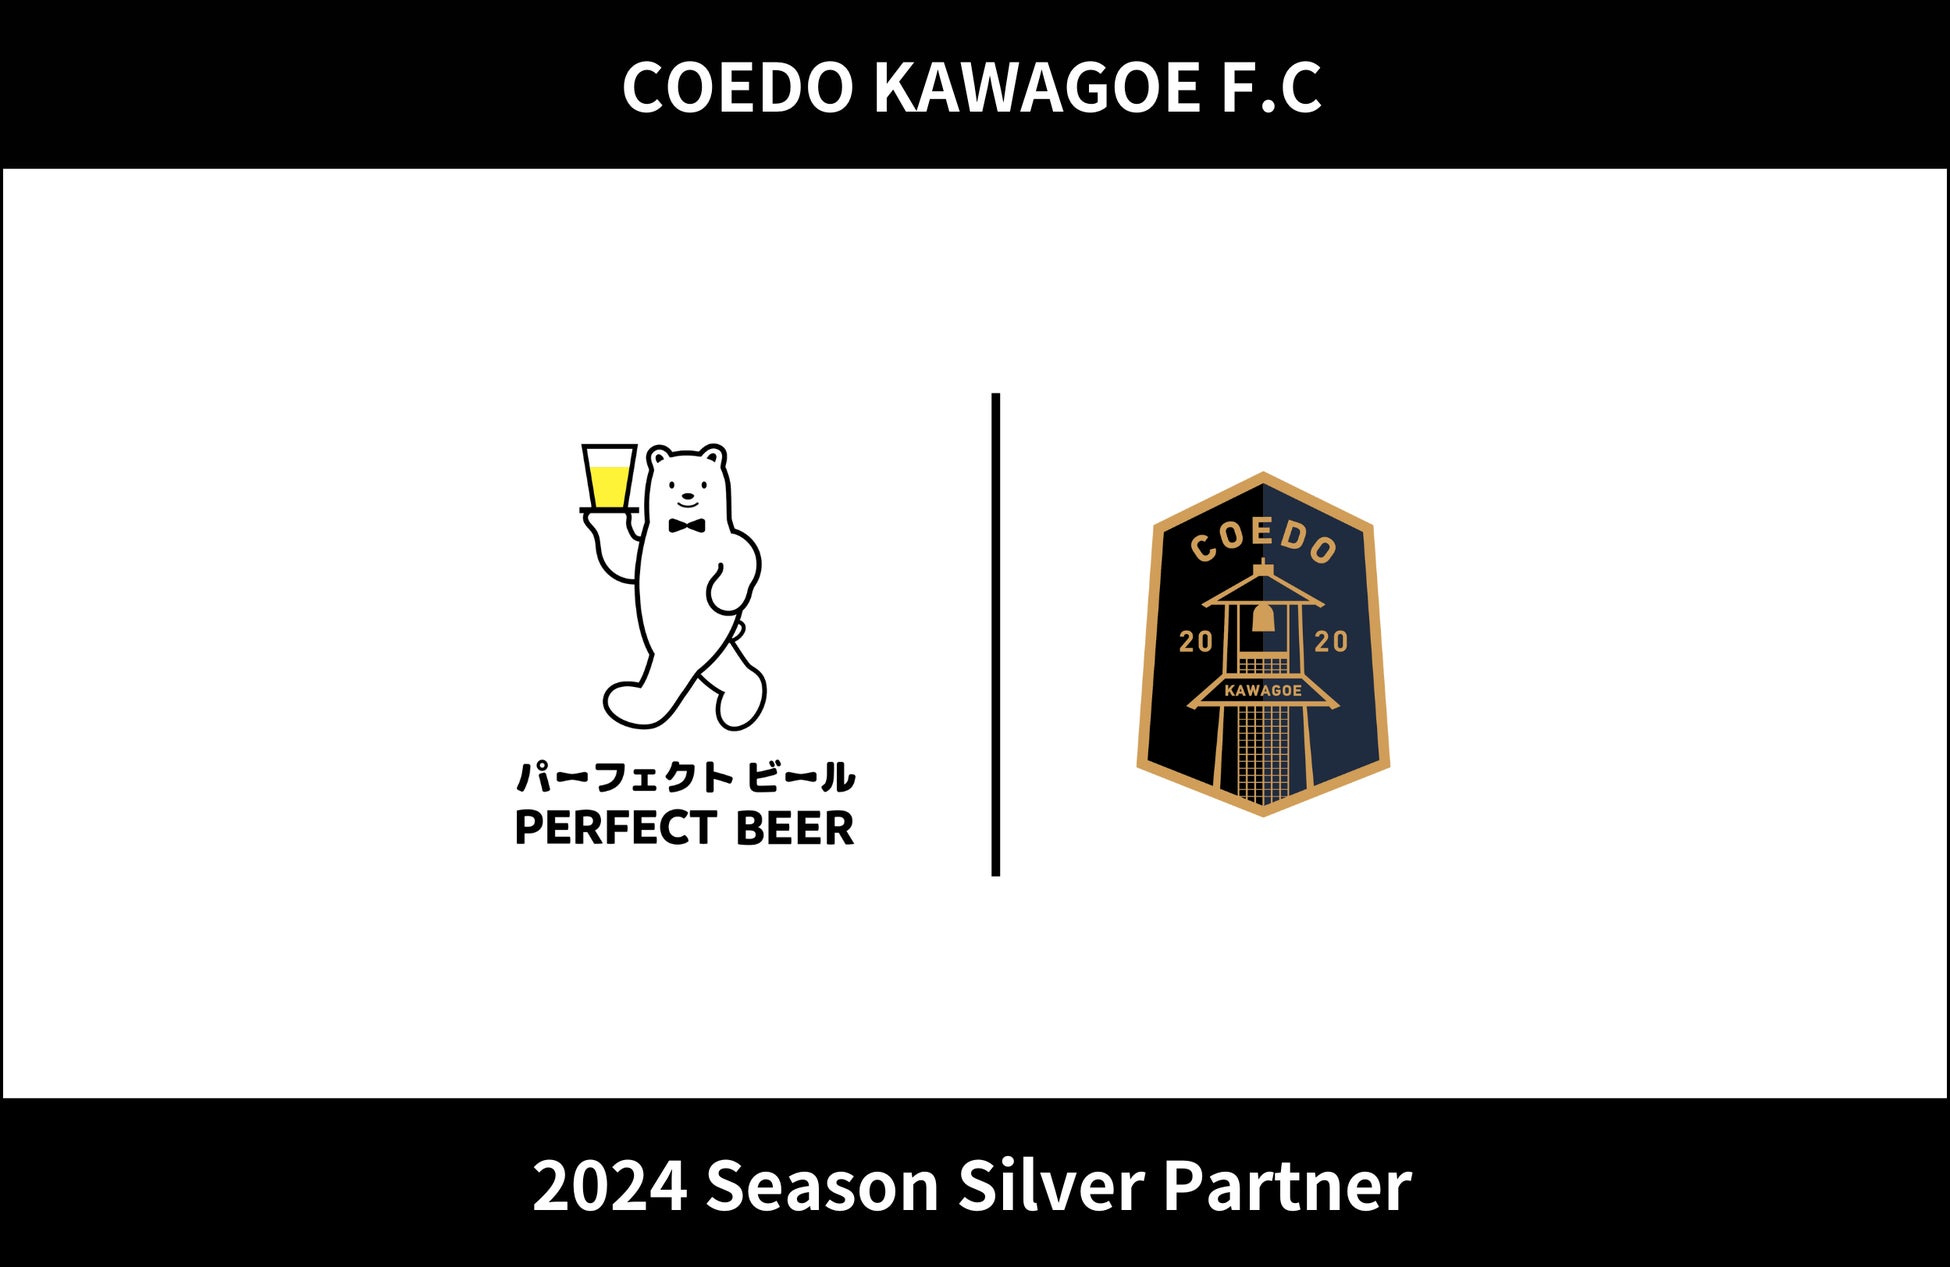 埼玉県川越市からJリーグを目指す「COEDO KAWAGOE F.C」、全国でフランチャイズ事業を展開する株式会社PERFECT BEERと2024シーズンのシルバーパートナー契約を締結